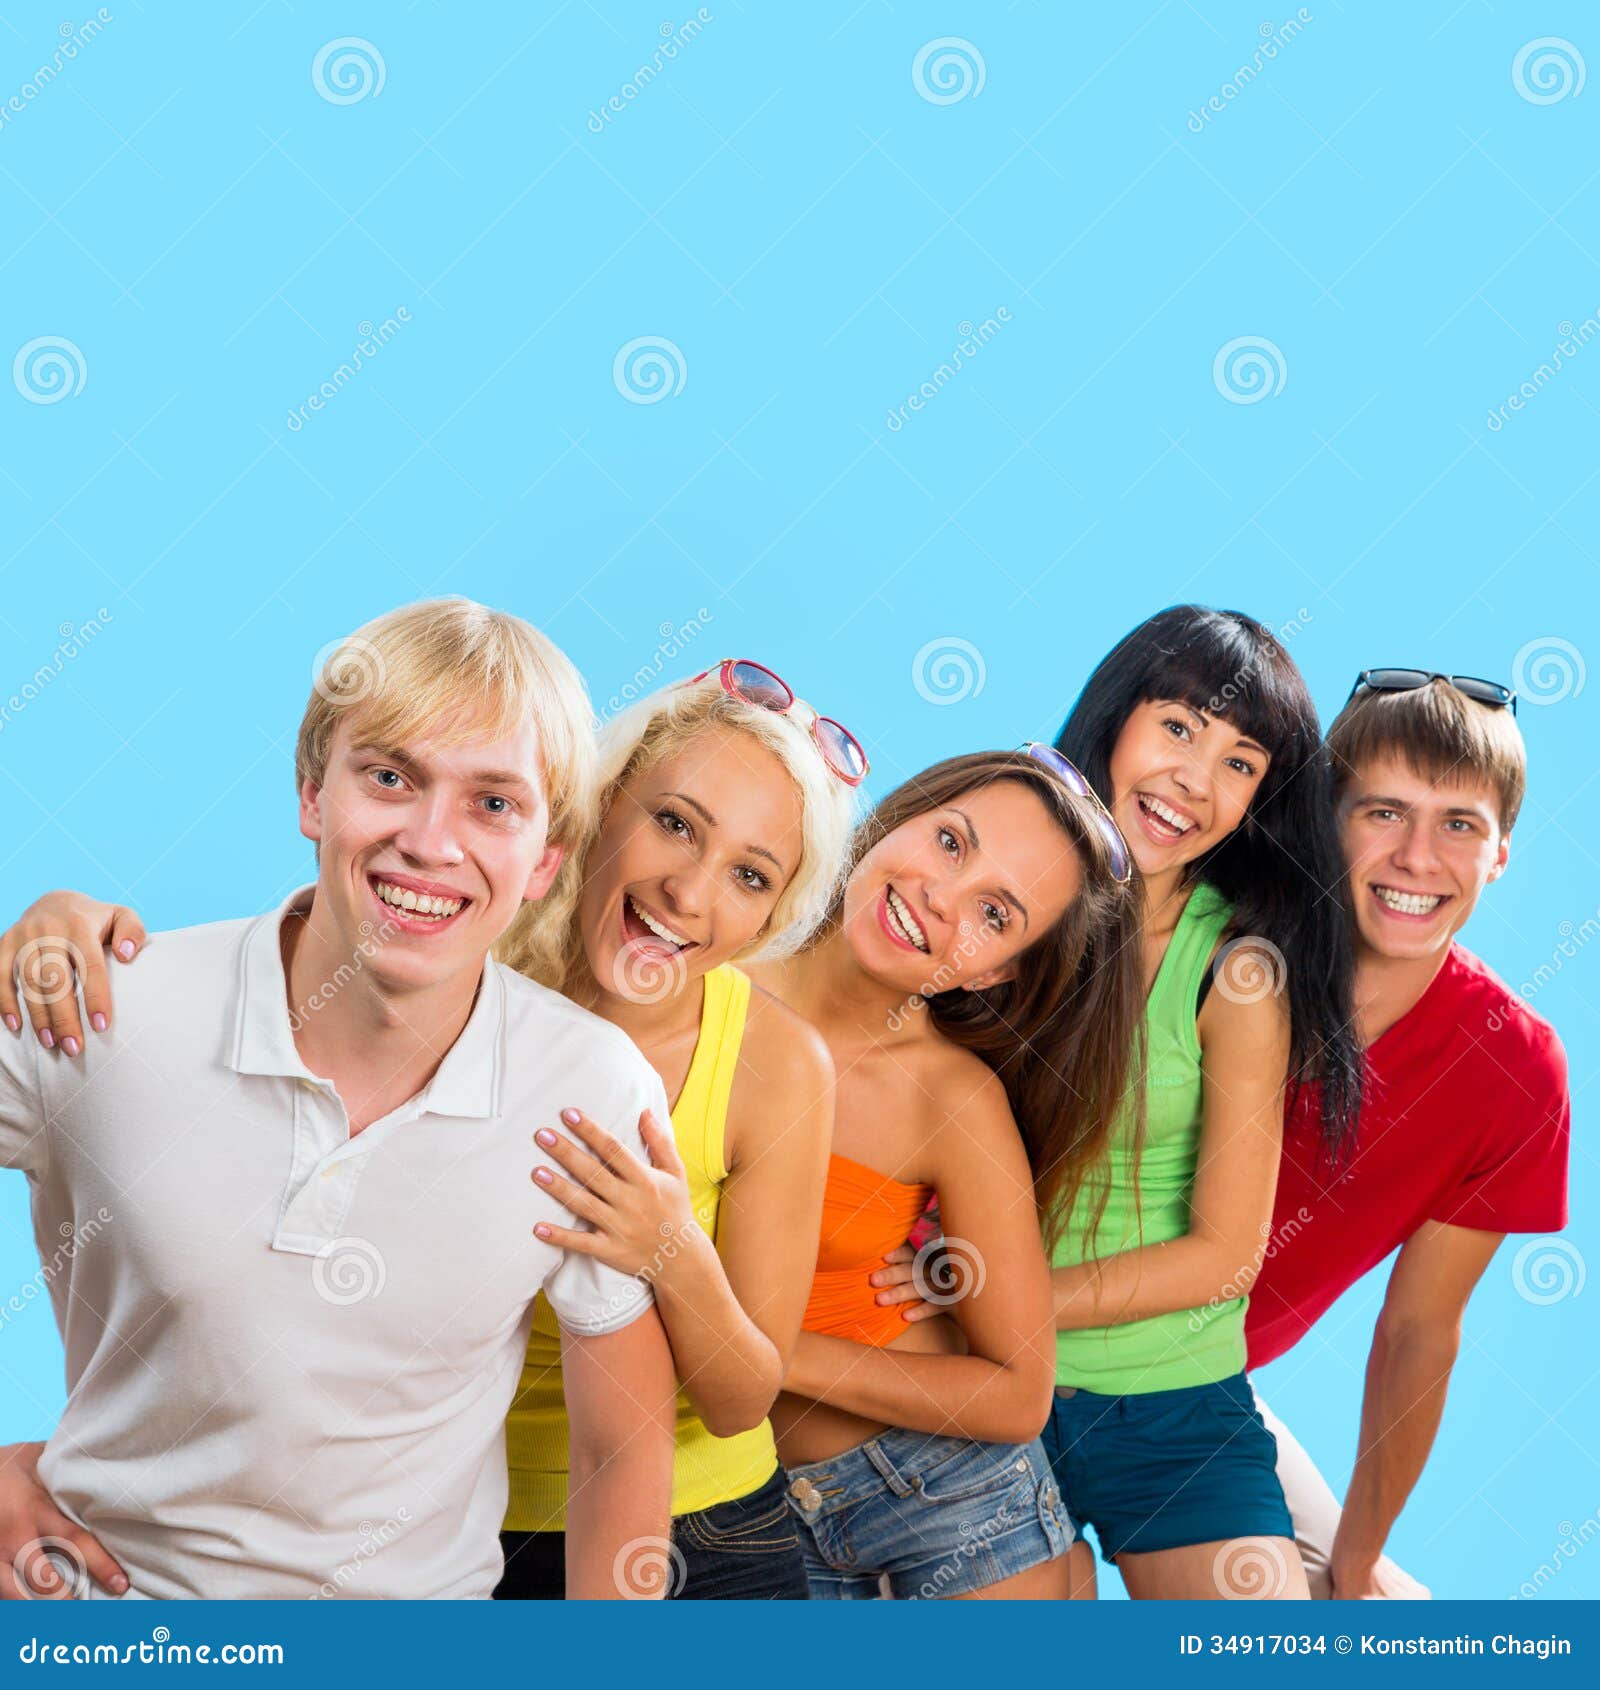 Are teenagers happy. Студенты на голубом фоне. Счастливые подростки голубое. Студент на синем фоне. Счастливые подростки 14 лет на белом фоне.